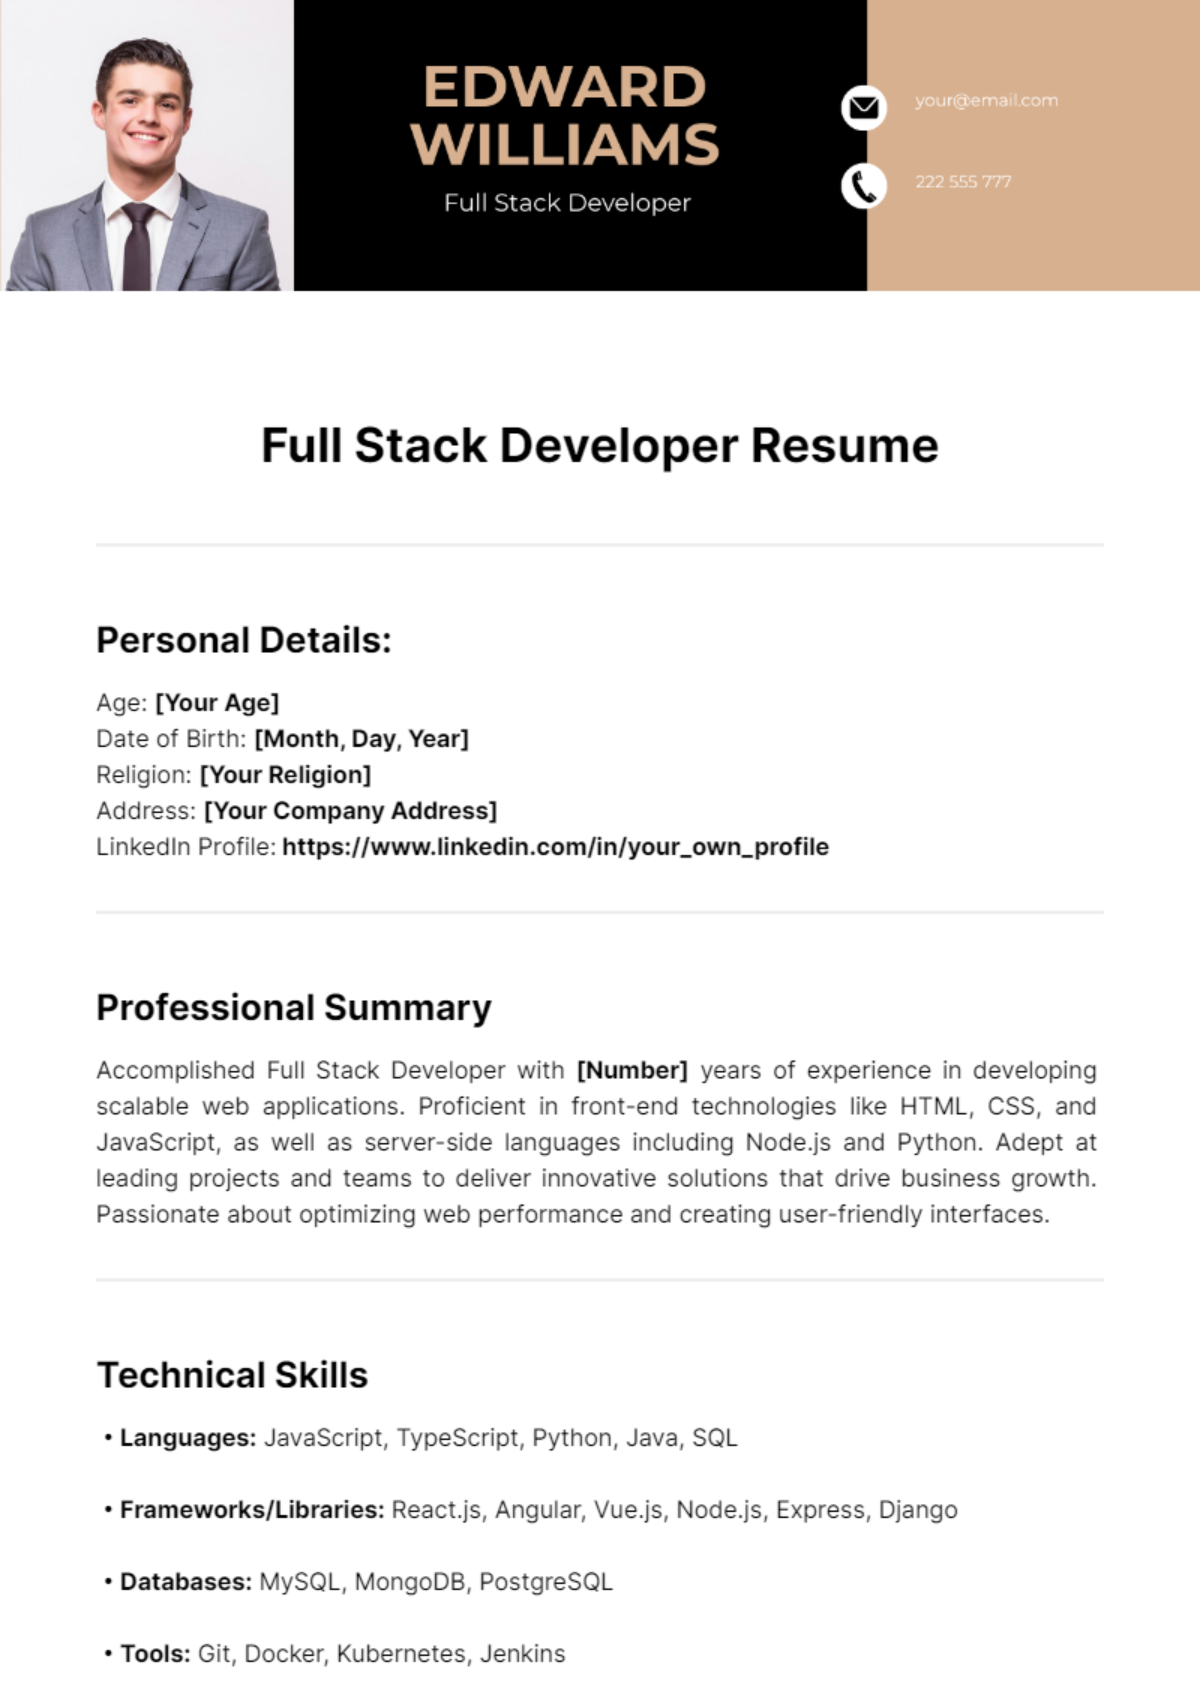 Full Stack Developer Resume Template